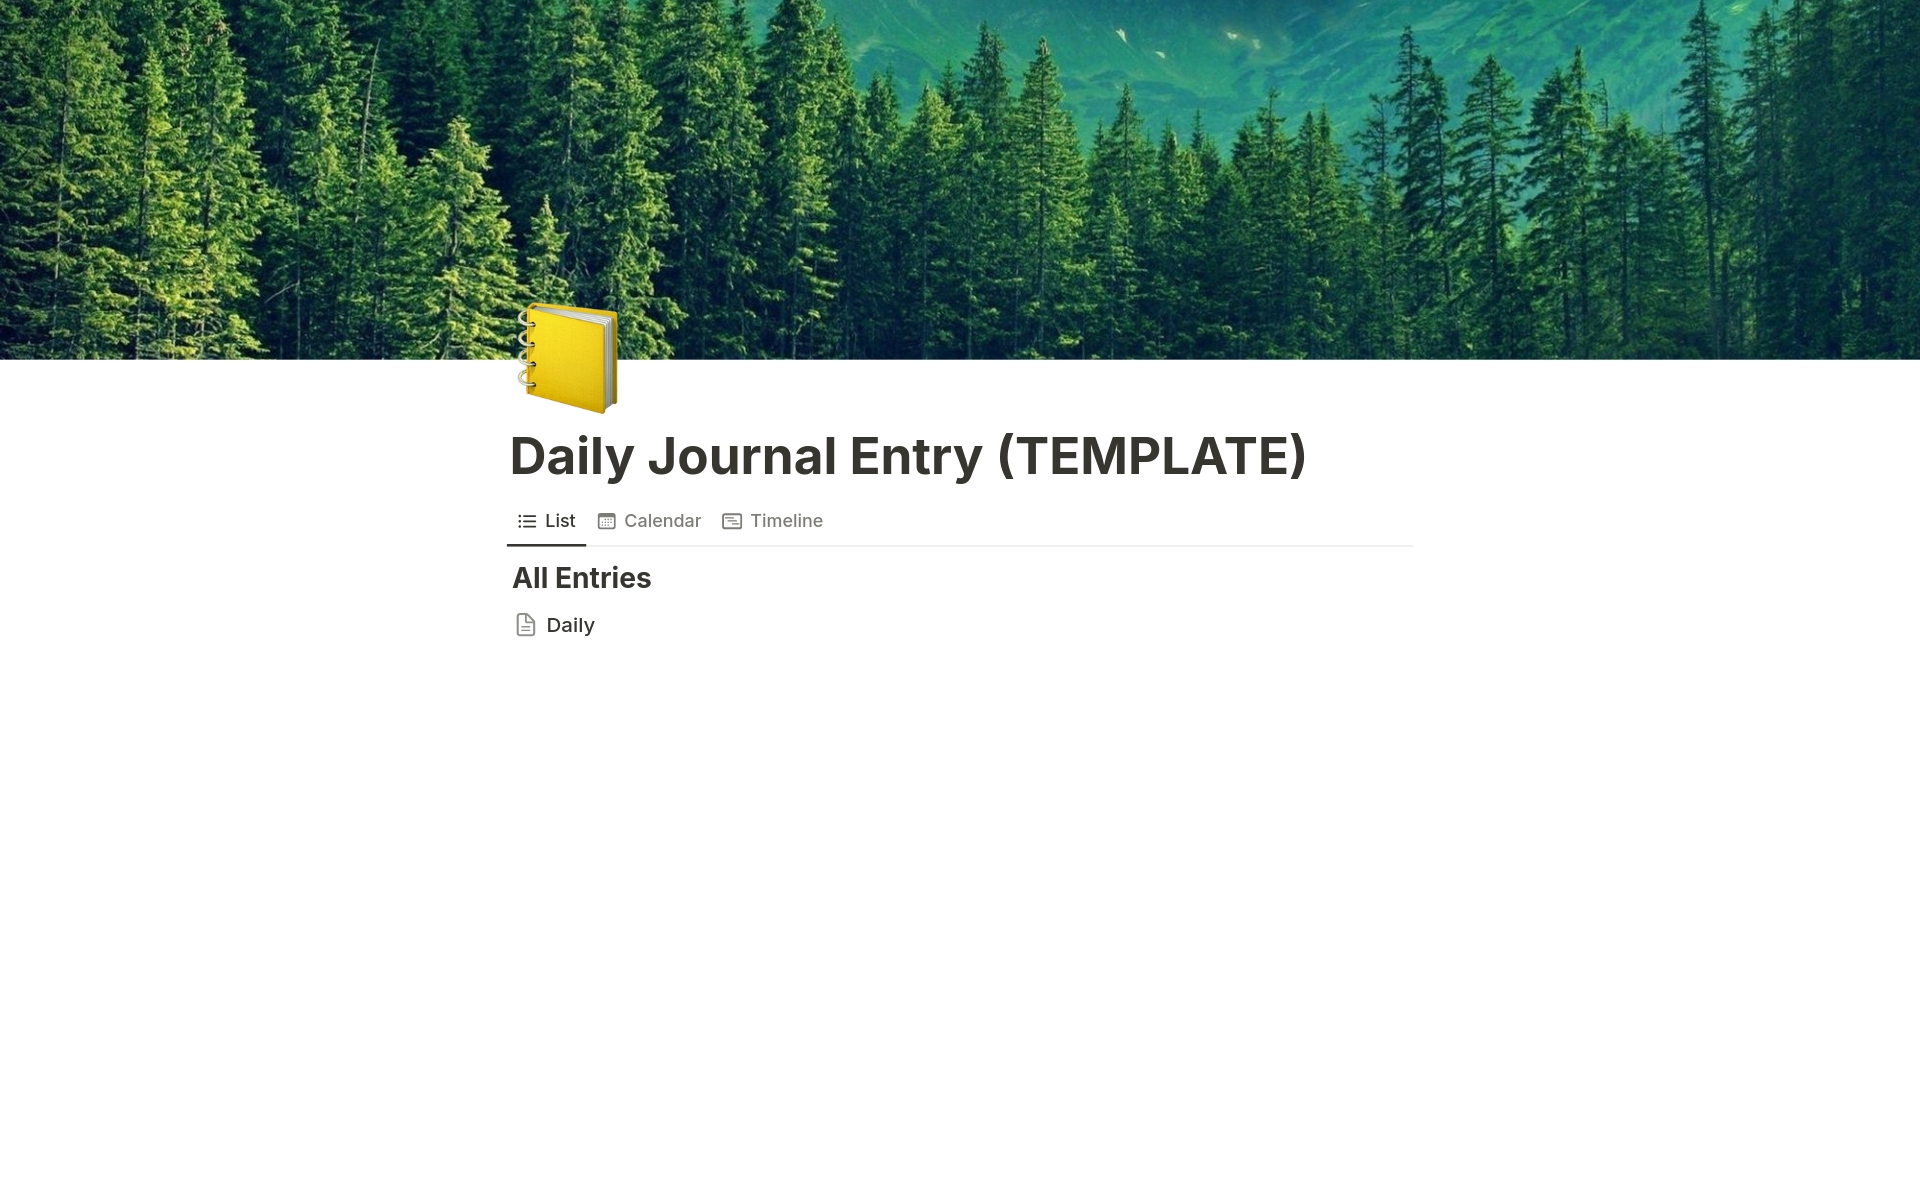 Vista previa de una plantilla para Daily Journal Entry